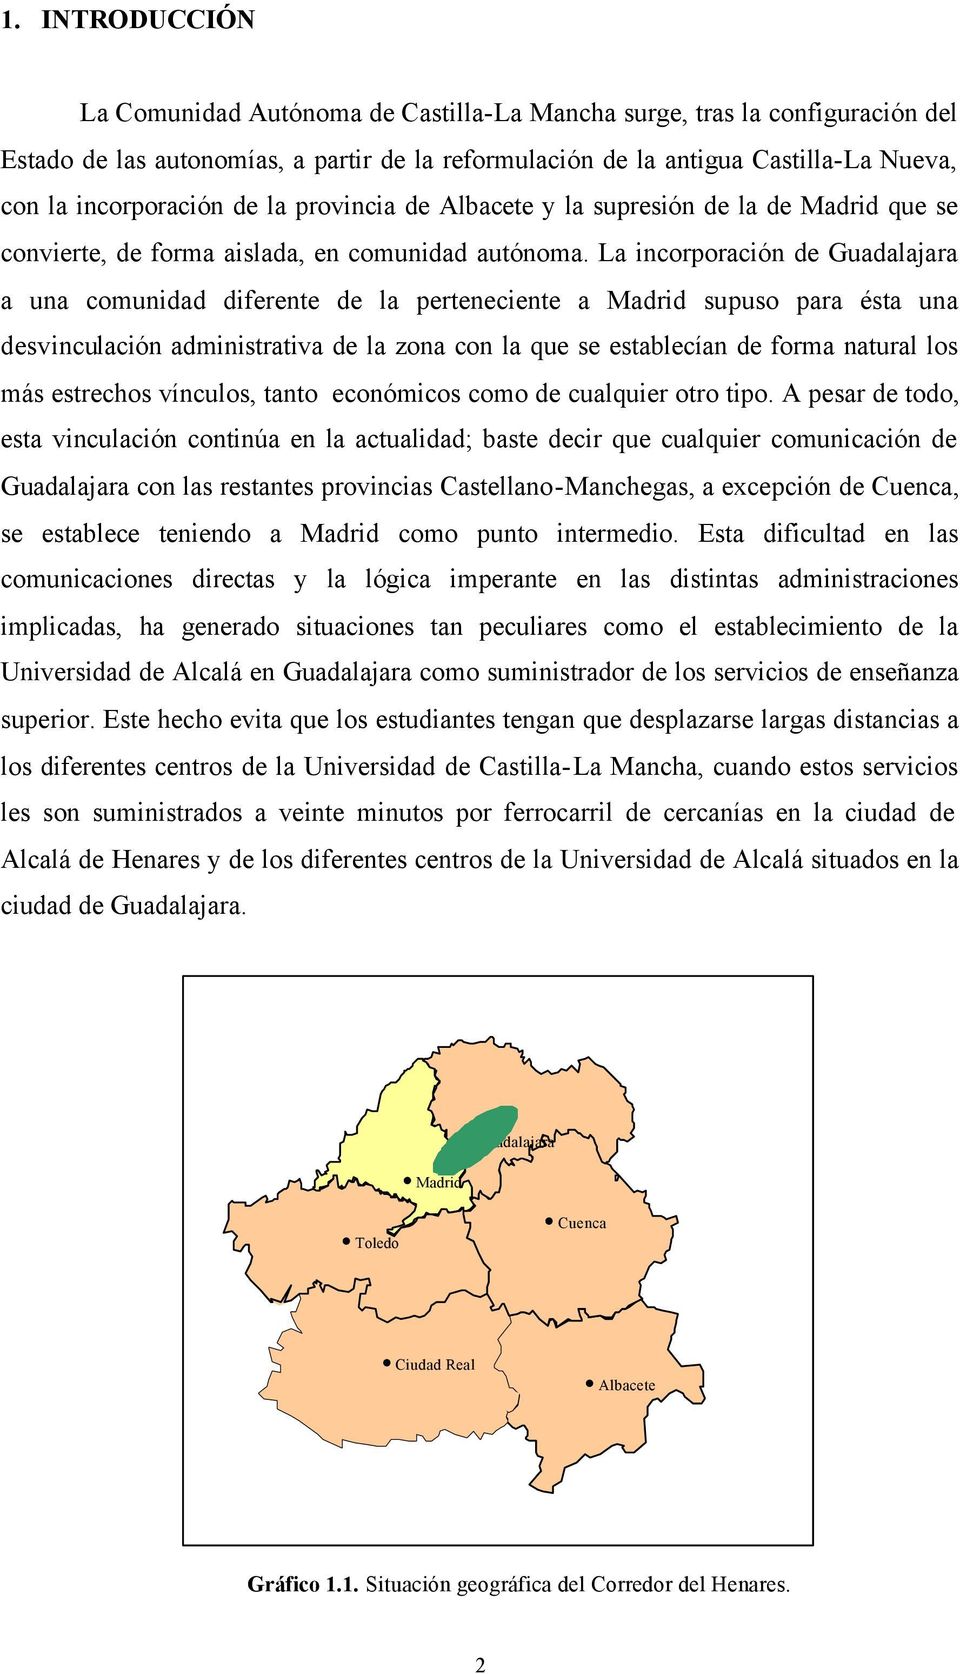 La incorporación de Guadalajara a una comunidad diferente de la perteneciente a Madrid supuso para ésta una desvinculación administrativa de la zona con la que se establecían de forma natural los más